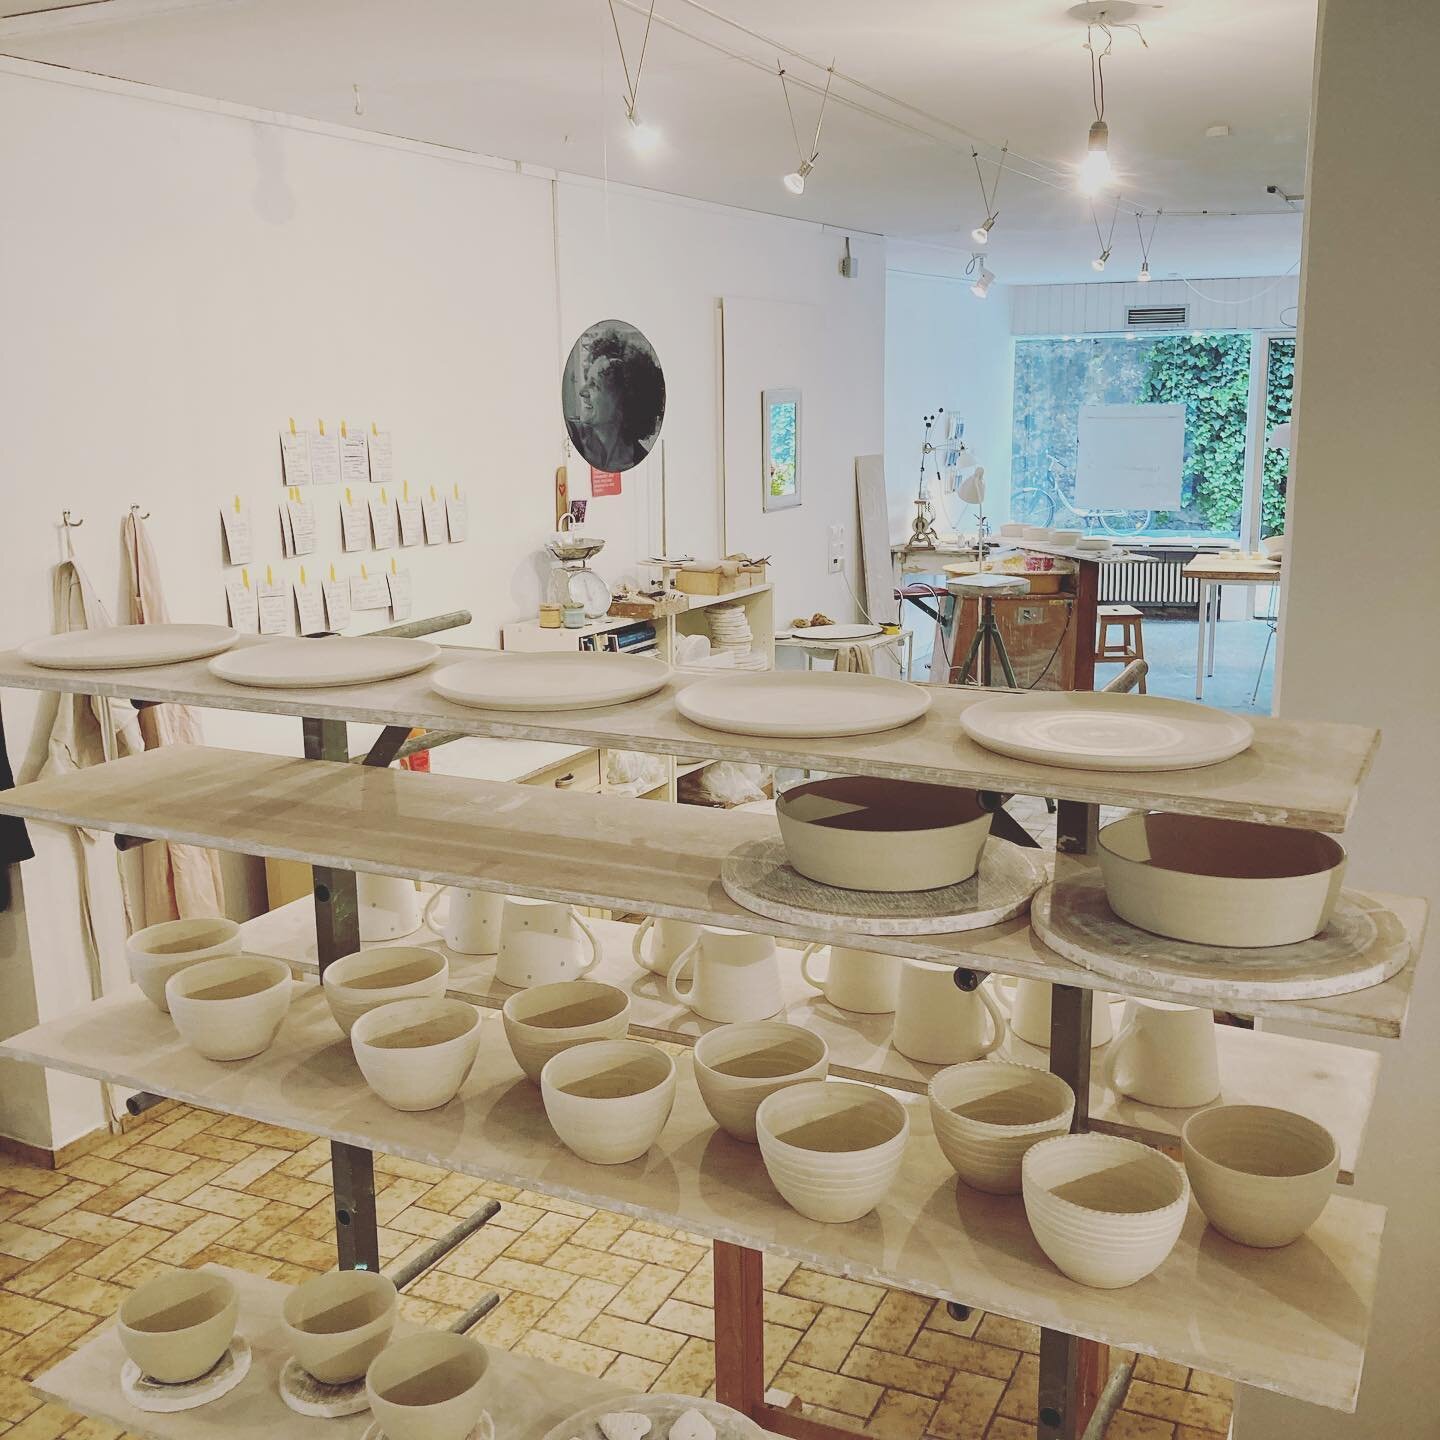 so happy to be here!! #myworkshop#oneyear#jarporzellan#ceramics#potterslife#porcelaine#handmade#gedecktertisch#geschirrliebe#tellertassensch&auml;lchen#hand#werk#lindauinsel#fischergasse#happyme